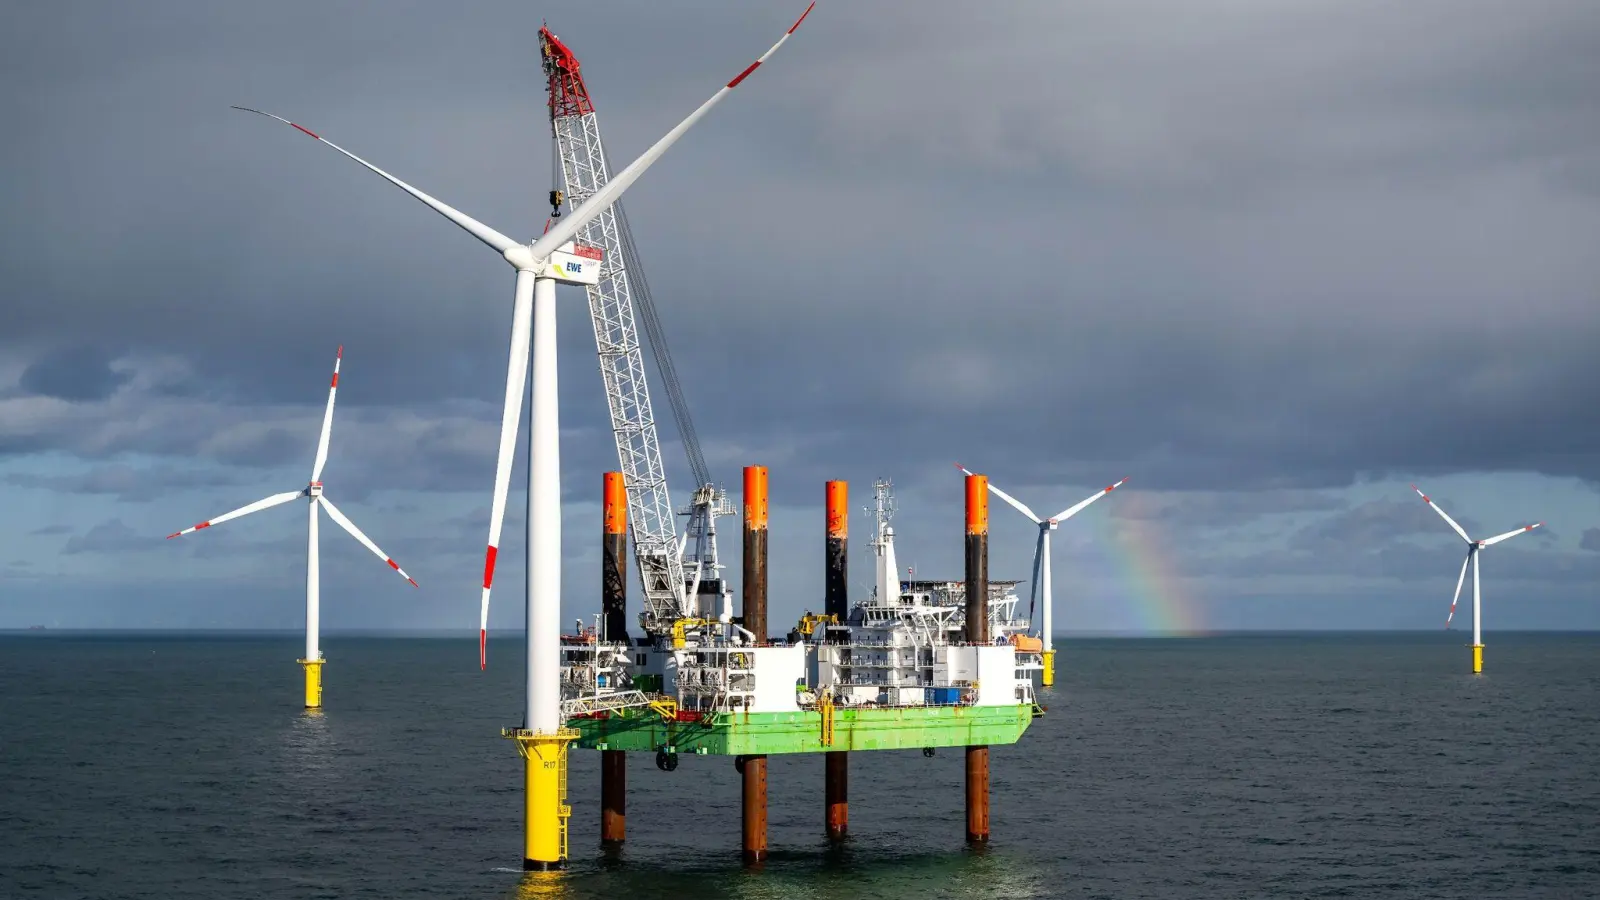 Das Offshore-Windkraftanlagen-Errichterschiff „Thor“ im Windpark Riffgat, rund 15 Kilometer nördlich der Insel Borkum. Windpark Riffgat war der allererste kommerzielle deutsche Windpark in der Nordsee. (Foto: Sina Schuldt/dpa)